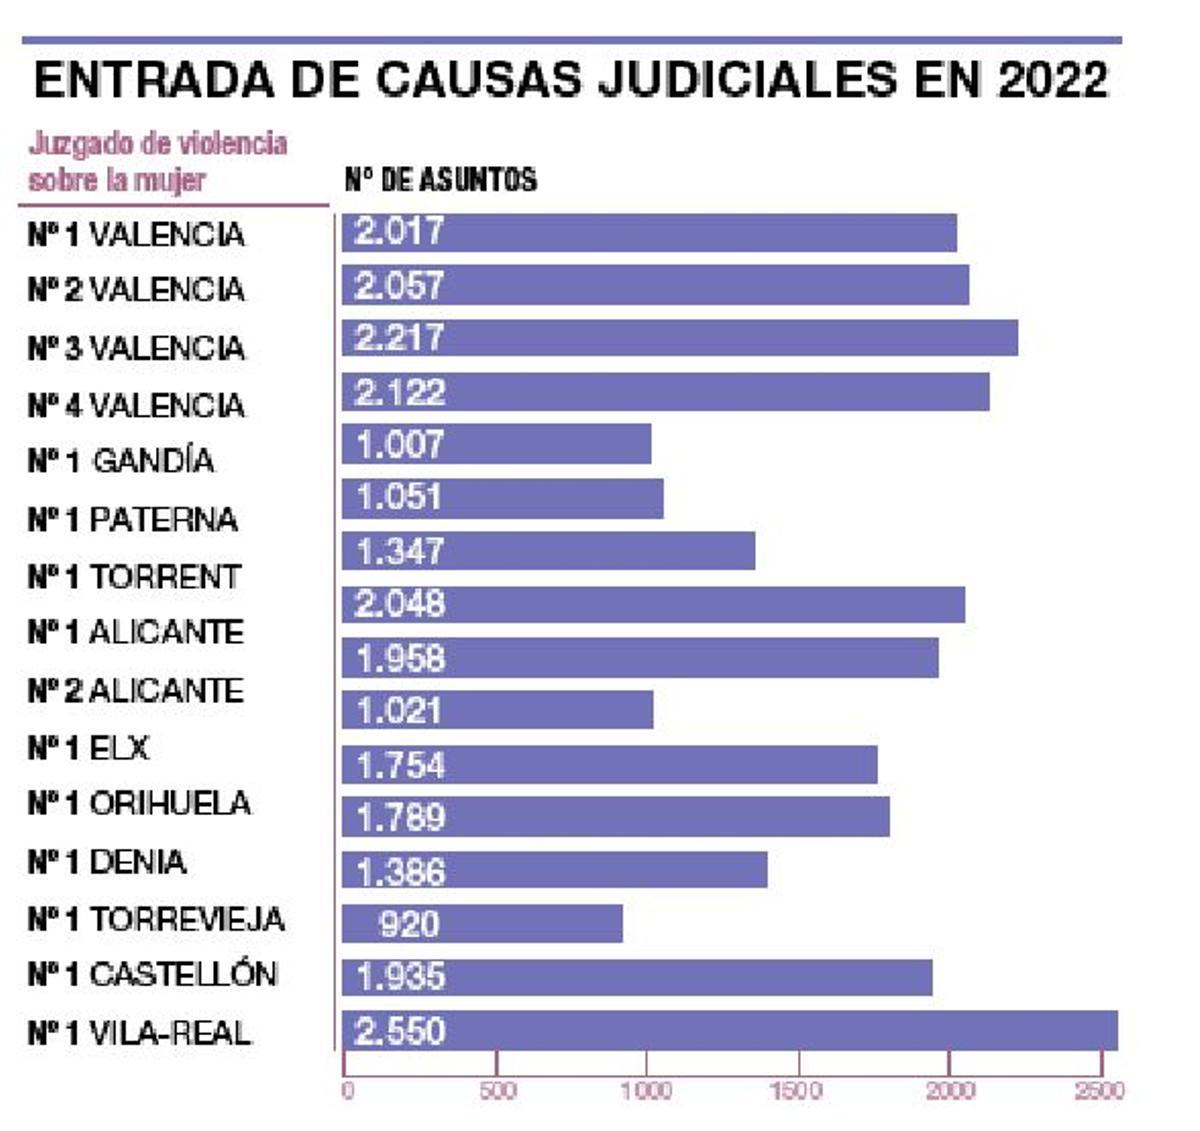 Entrada de causas judiciales en el año 2022 en los juzgados especializados.